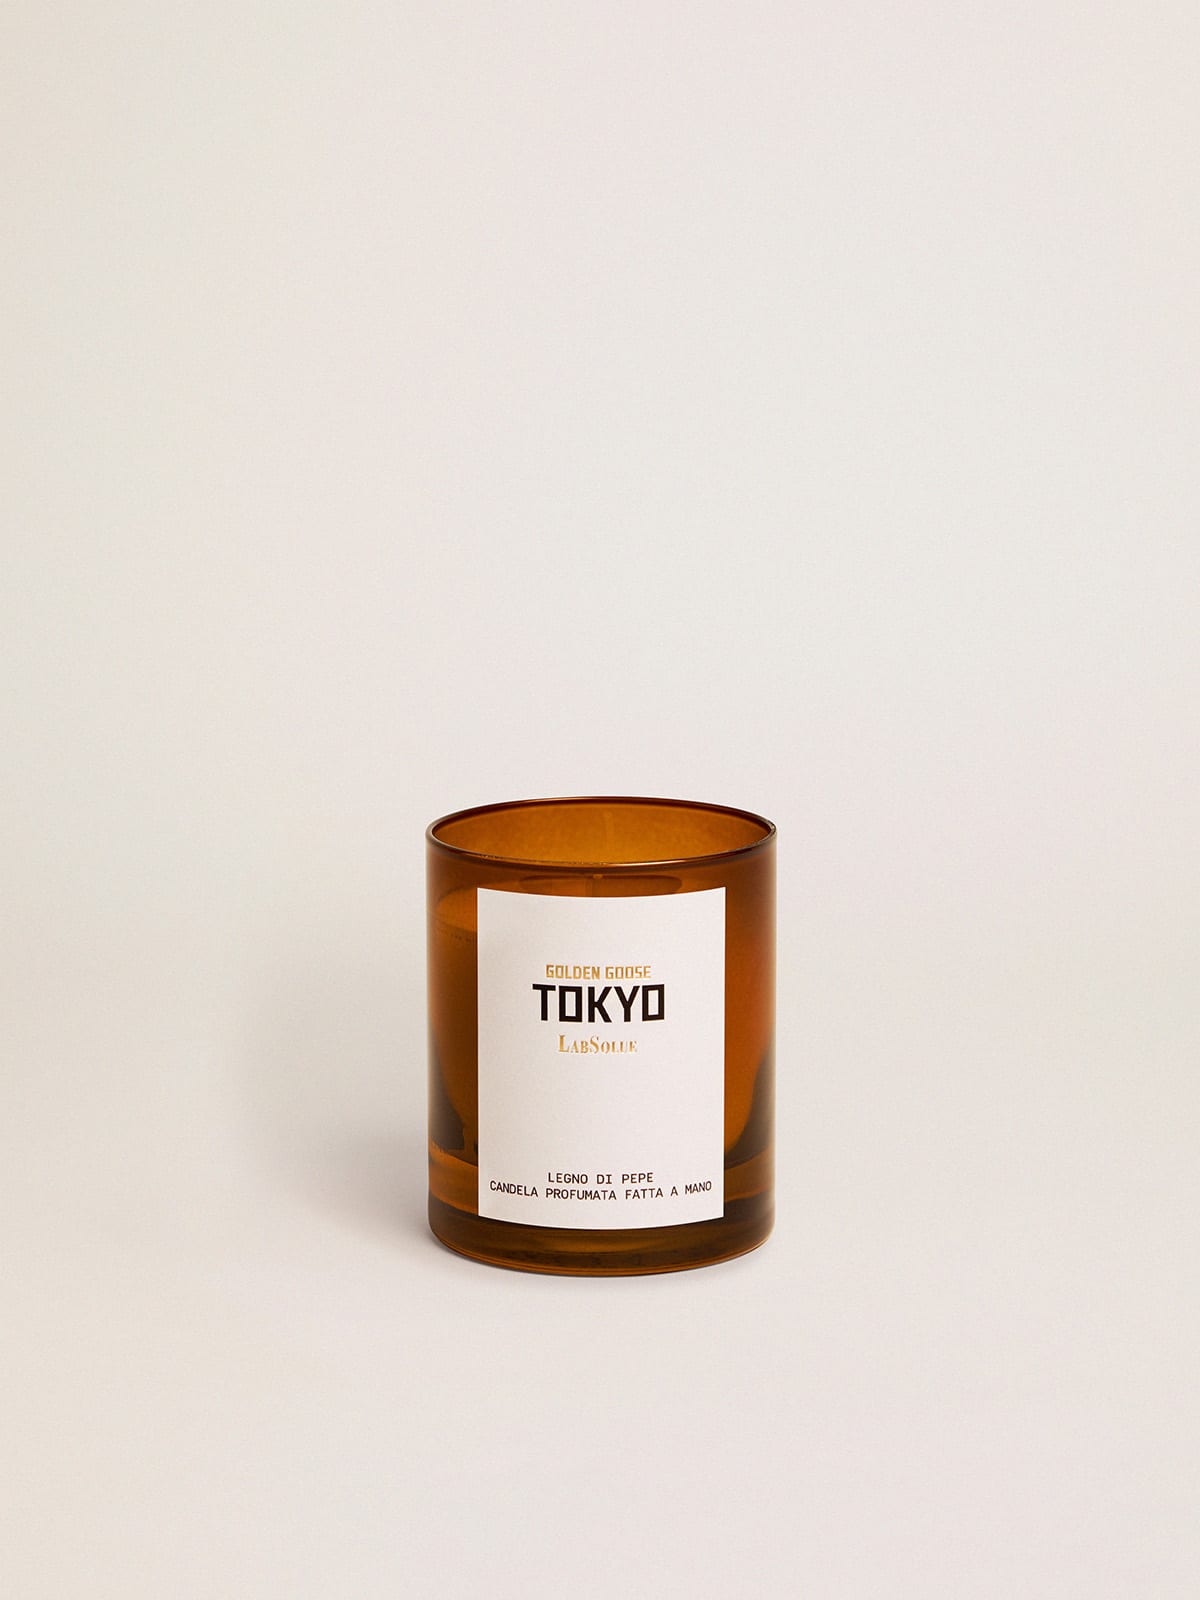 Golden Goose - Tokyo Essence Madera de Pimienta vela aromática 200 g in 